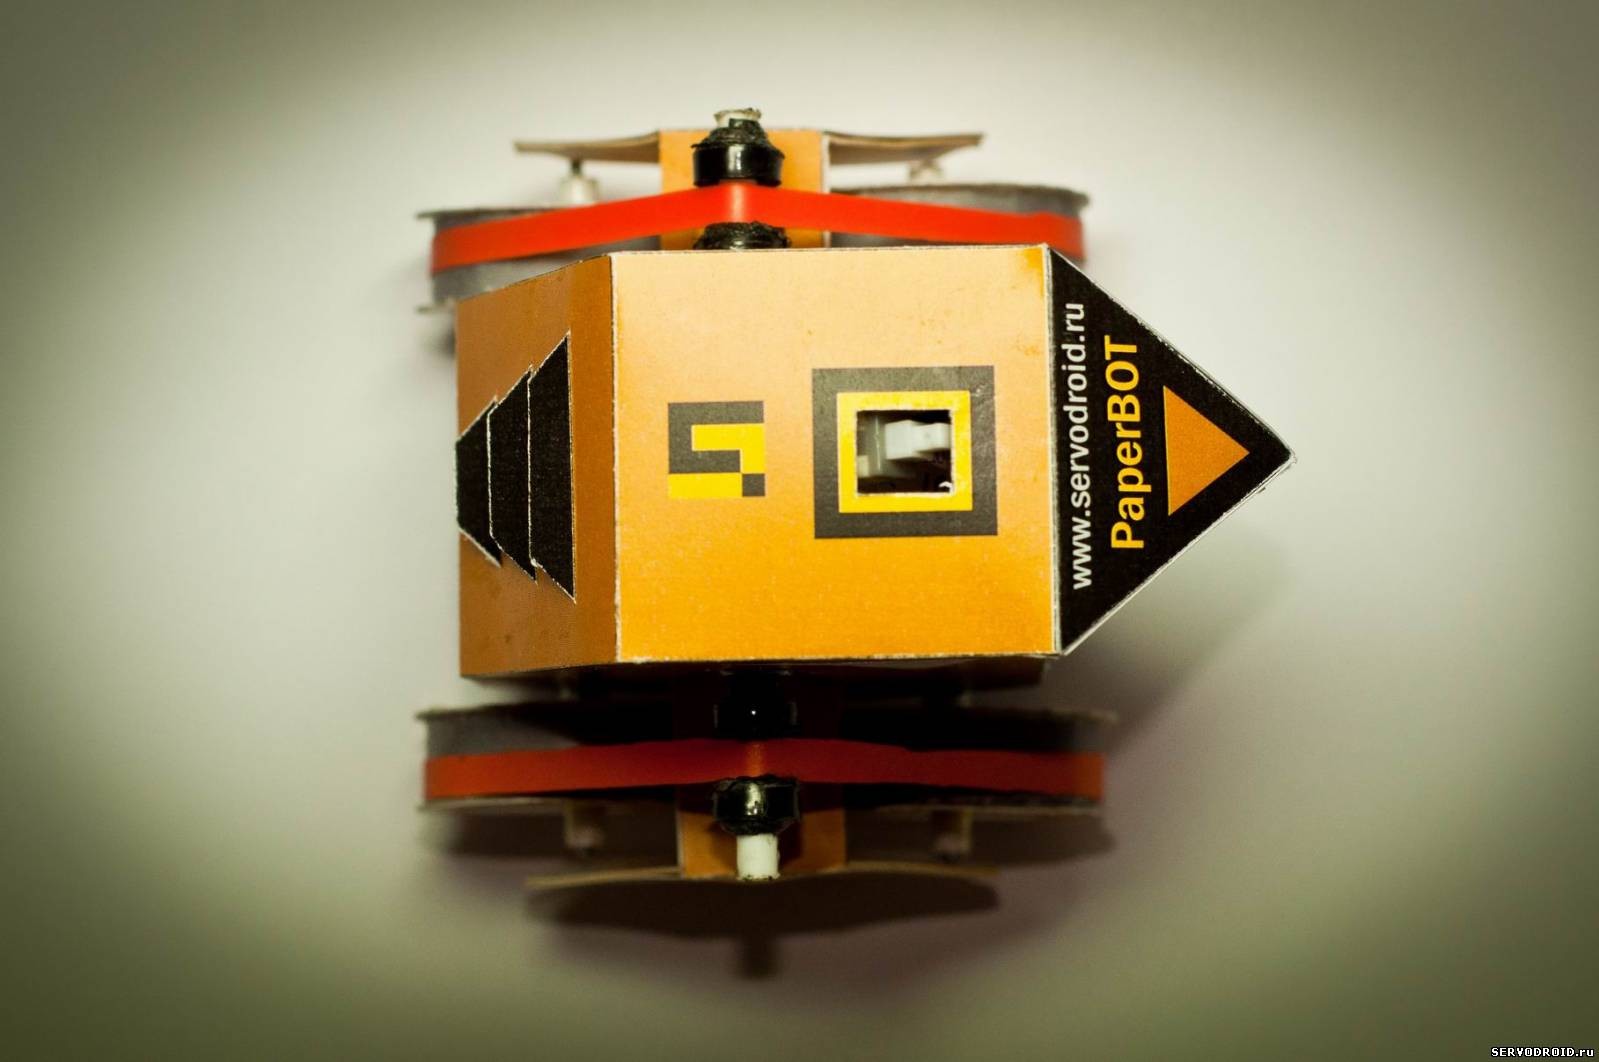 SERVODROID - Творческий подход к созданию робота!